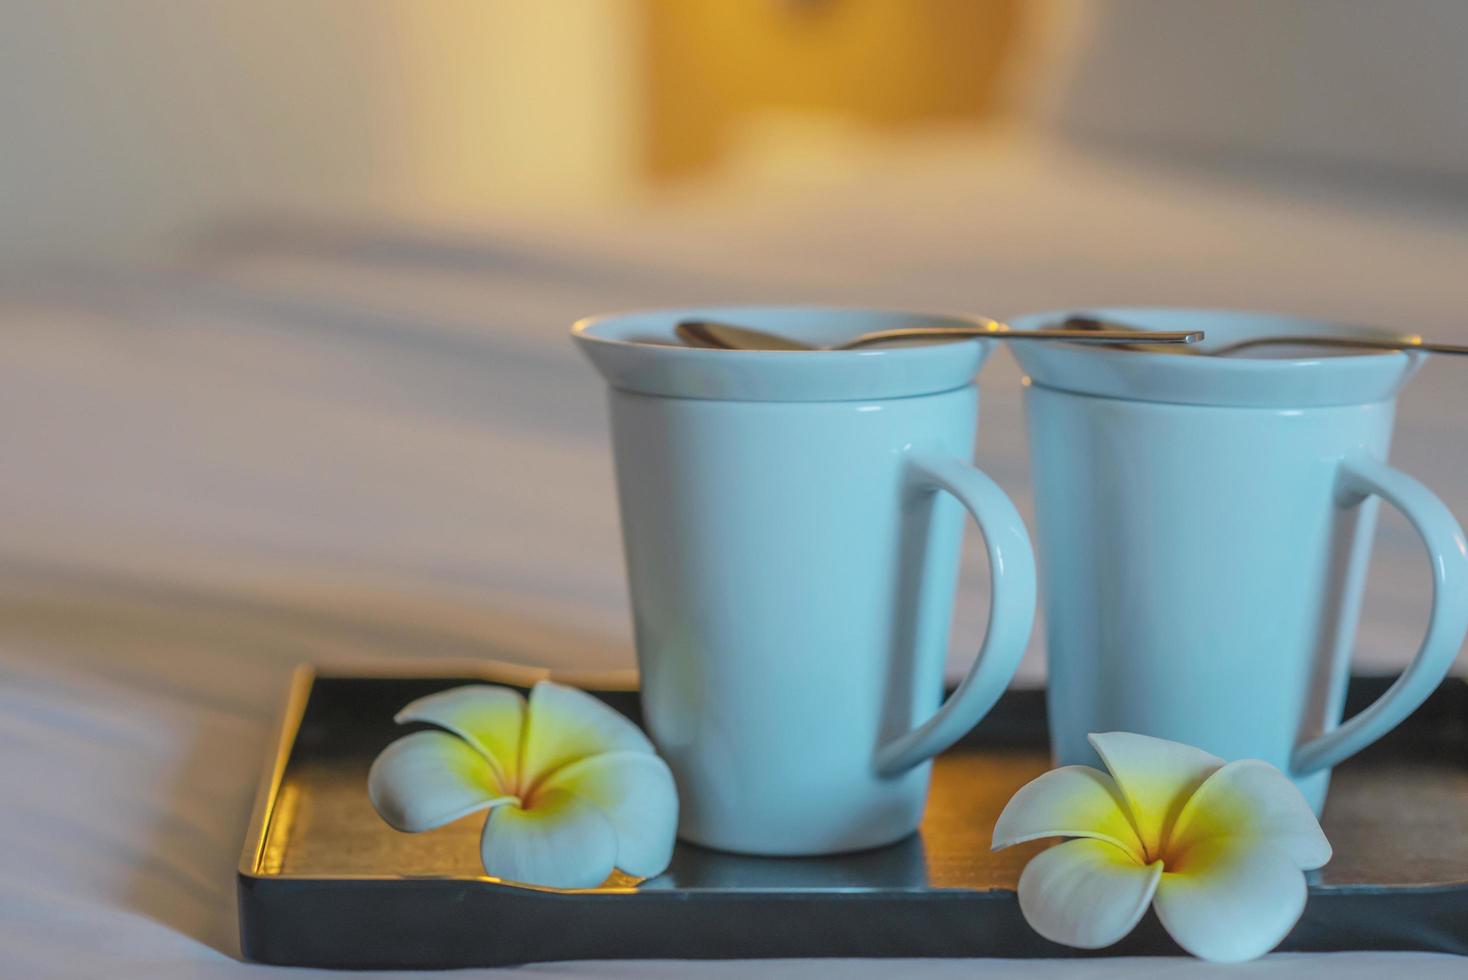 gros plan sur une tasse de café de bienvenue sur un lit blanc dans une chambre d'hôtel - concept de voyage de vacances d'accueil de l'hôtel photo